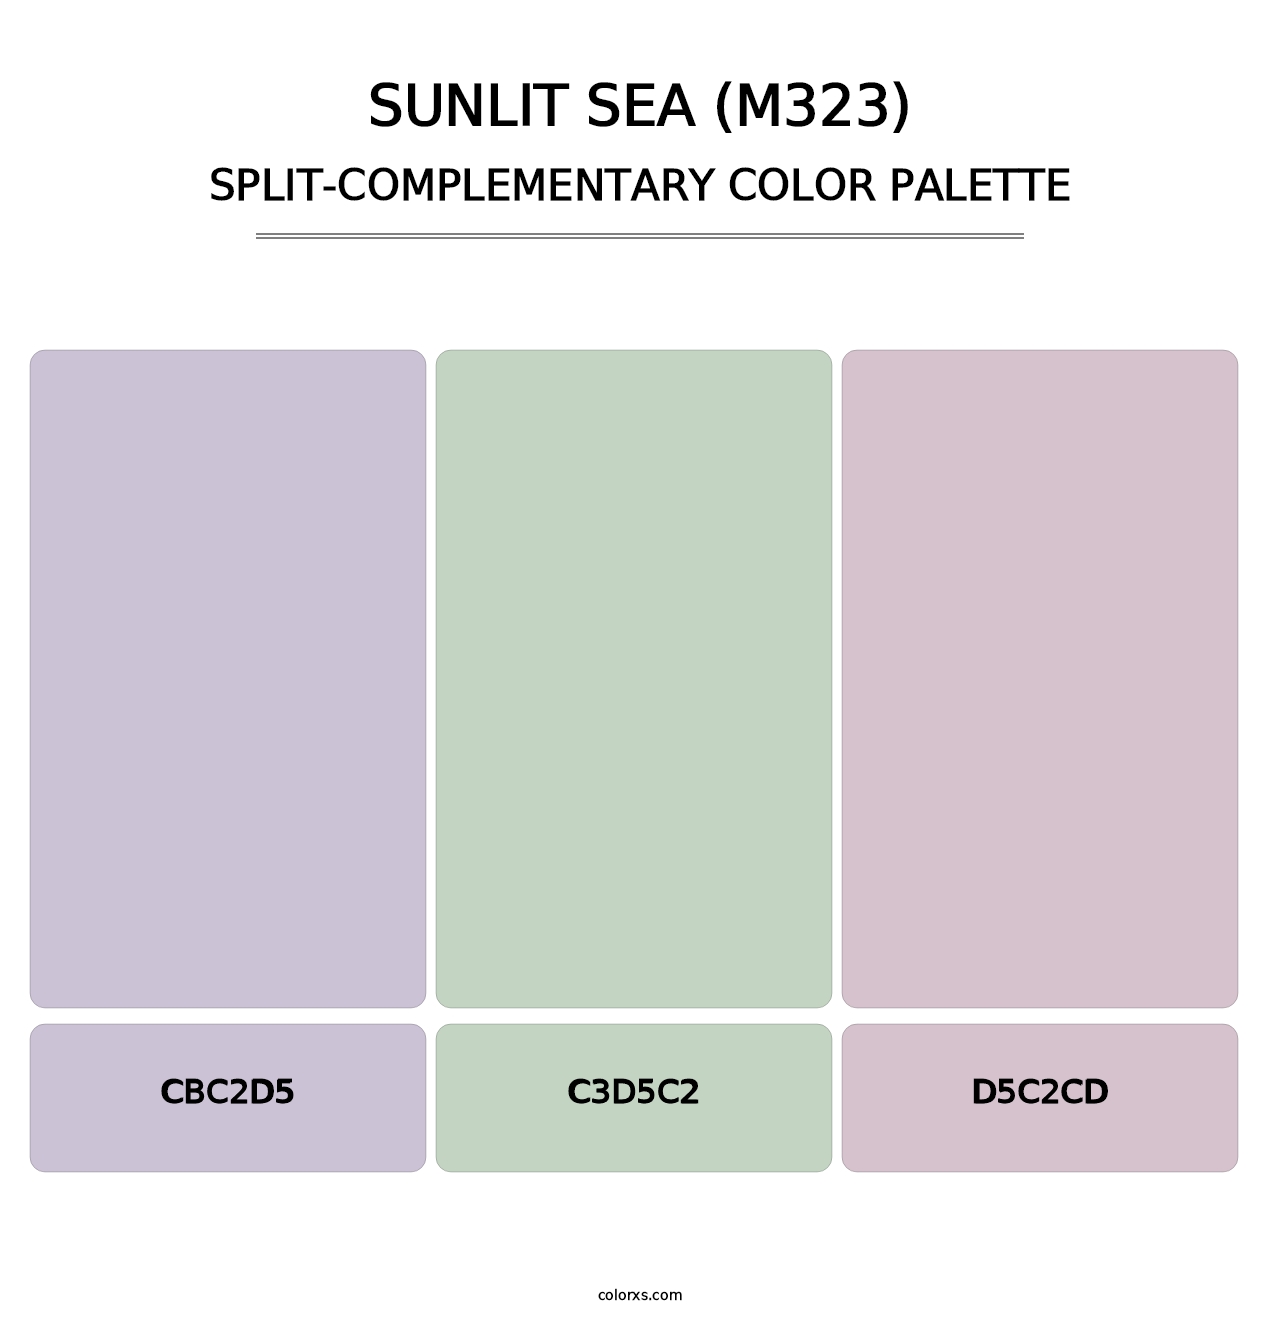 Sunlit Sea (M323) - Split-Complementary Color Palette